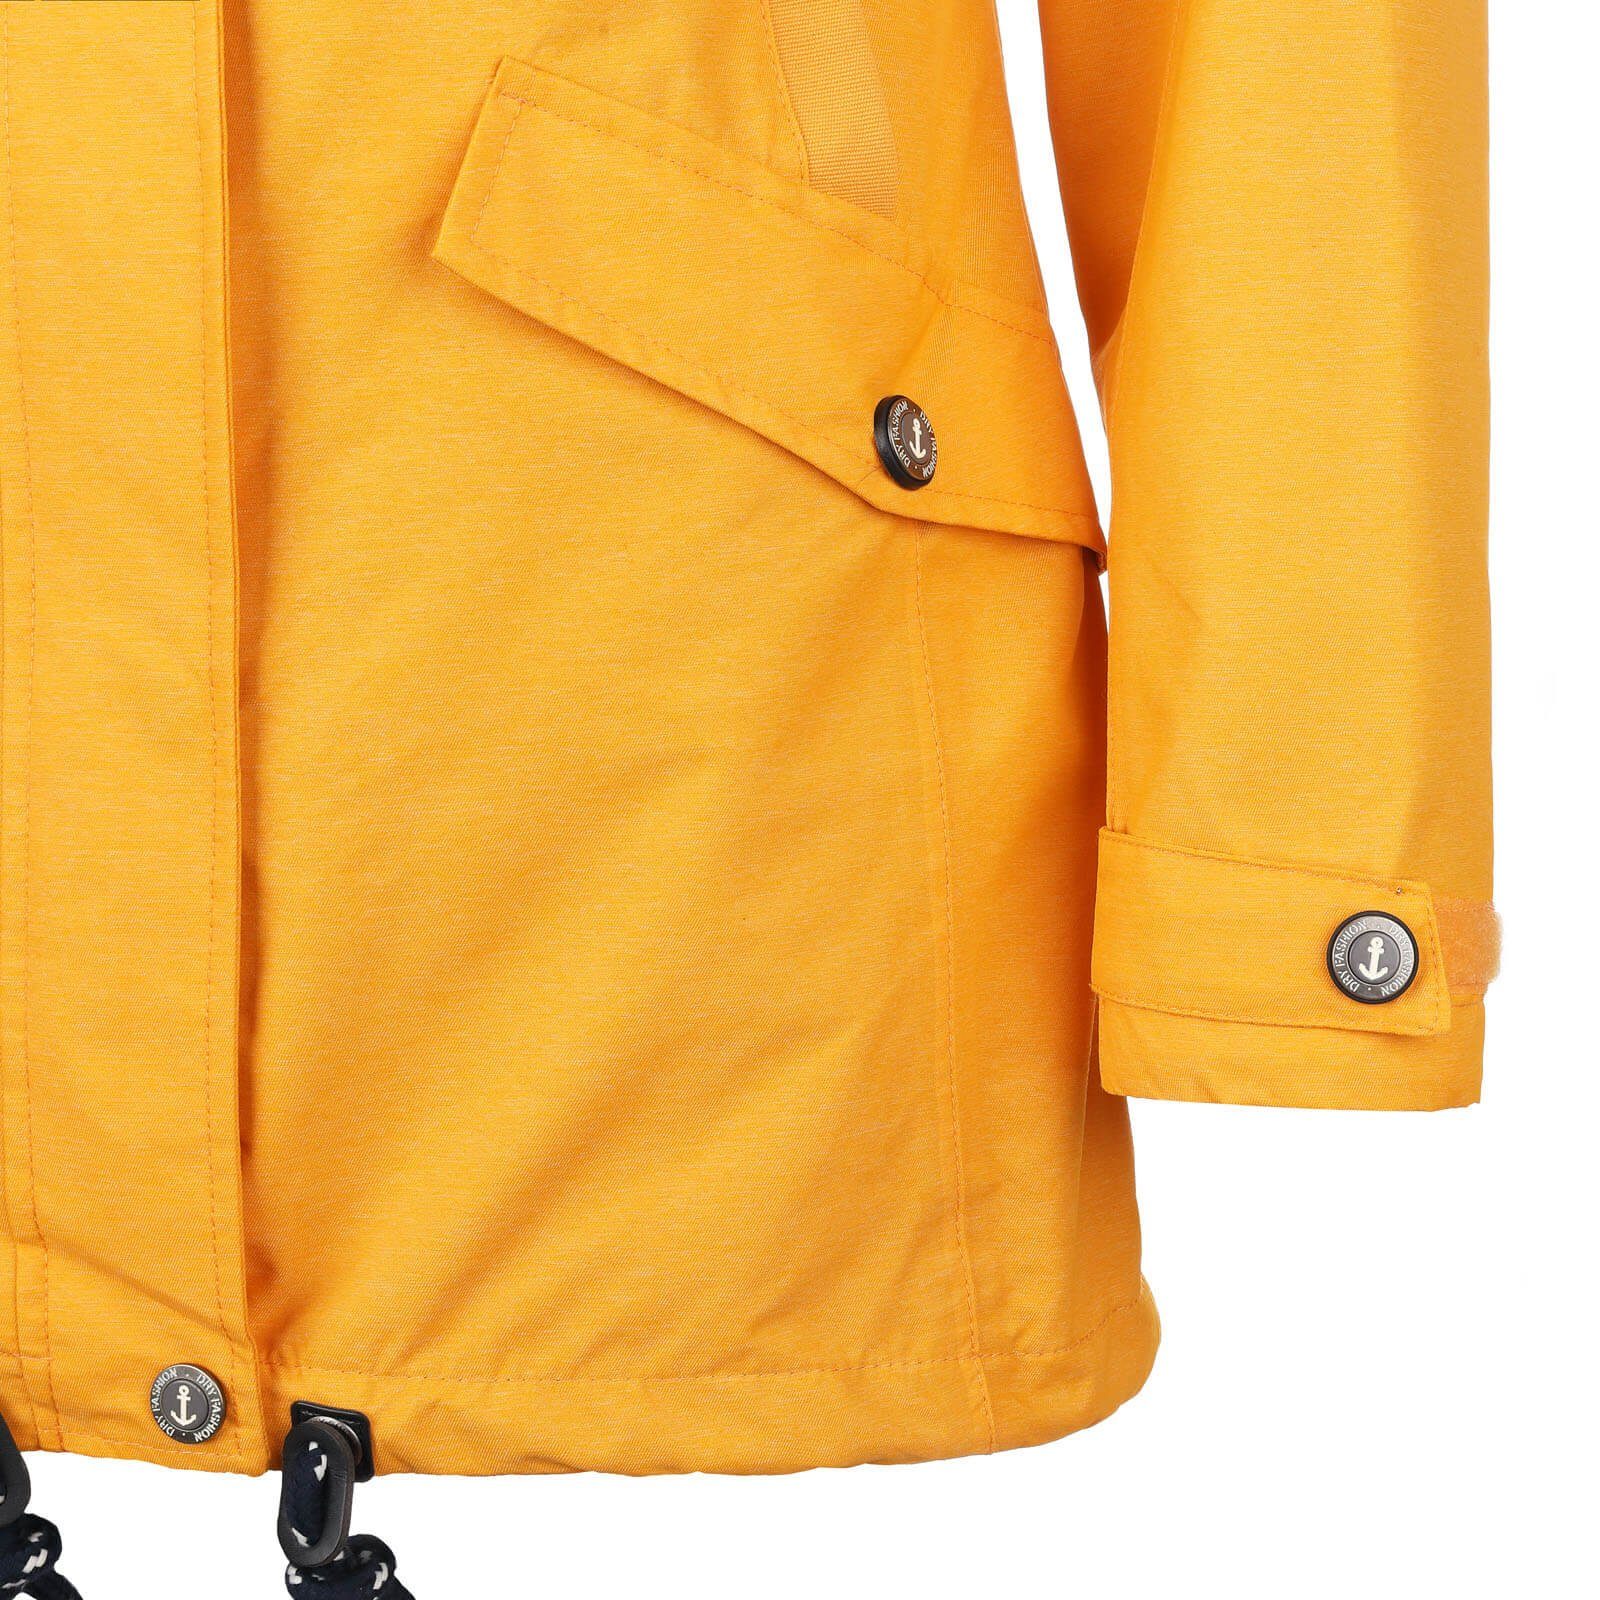 Regenjacke Dry Fashion wasserdicht Funktionsjacke Regen-Mantel gelb - Funktionsmantel melange Damen Bansin